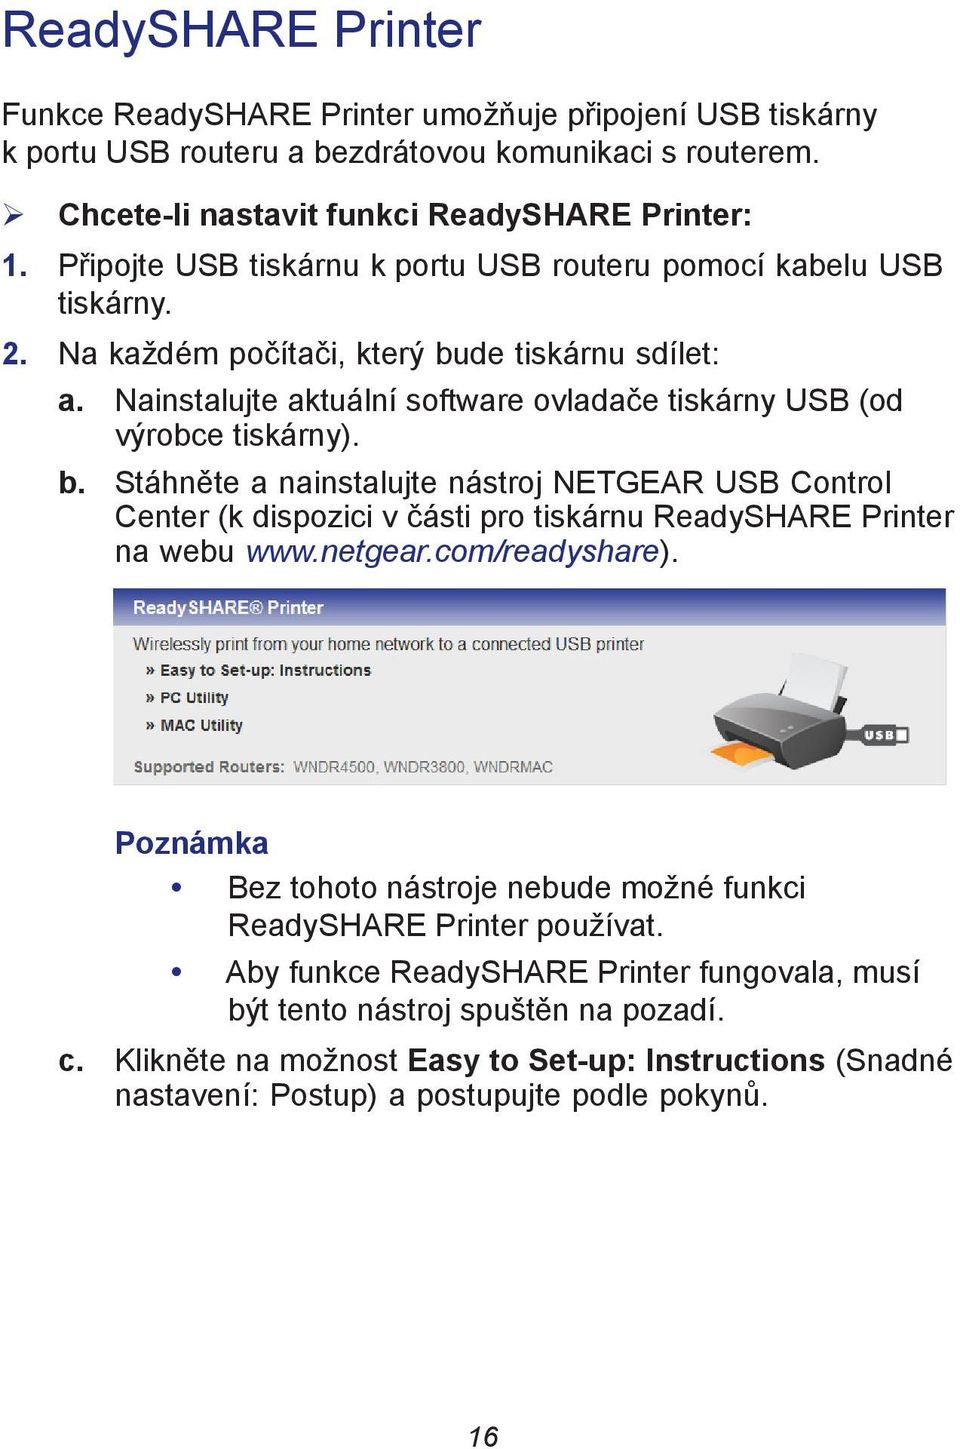 b. Stáhněte a nainstalujte nástroj NETGEAR USB Control Center (k dispozici v části pro tiskárnu ReadySHARE Printer na webu www.netgear.com/readyshare).